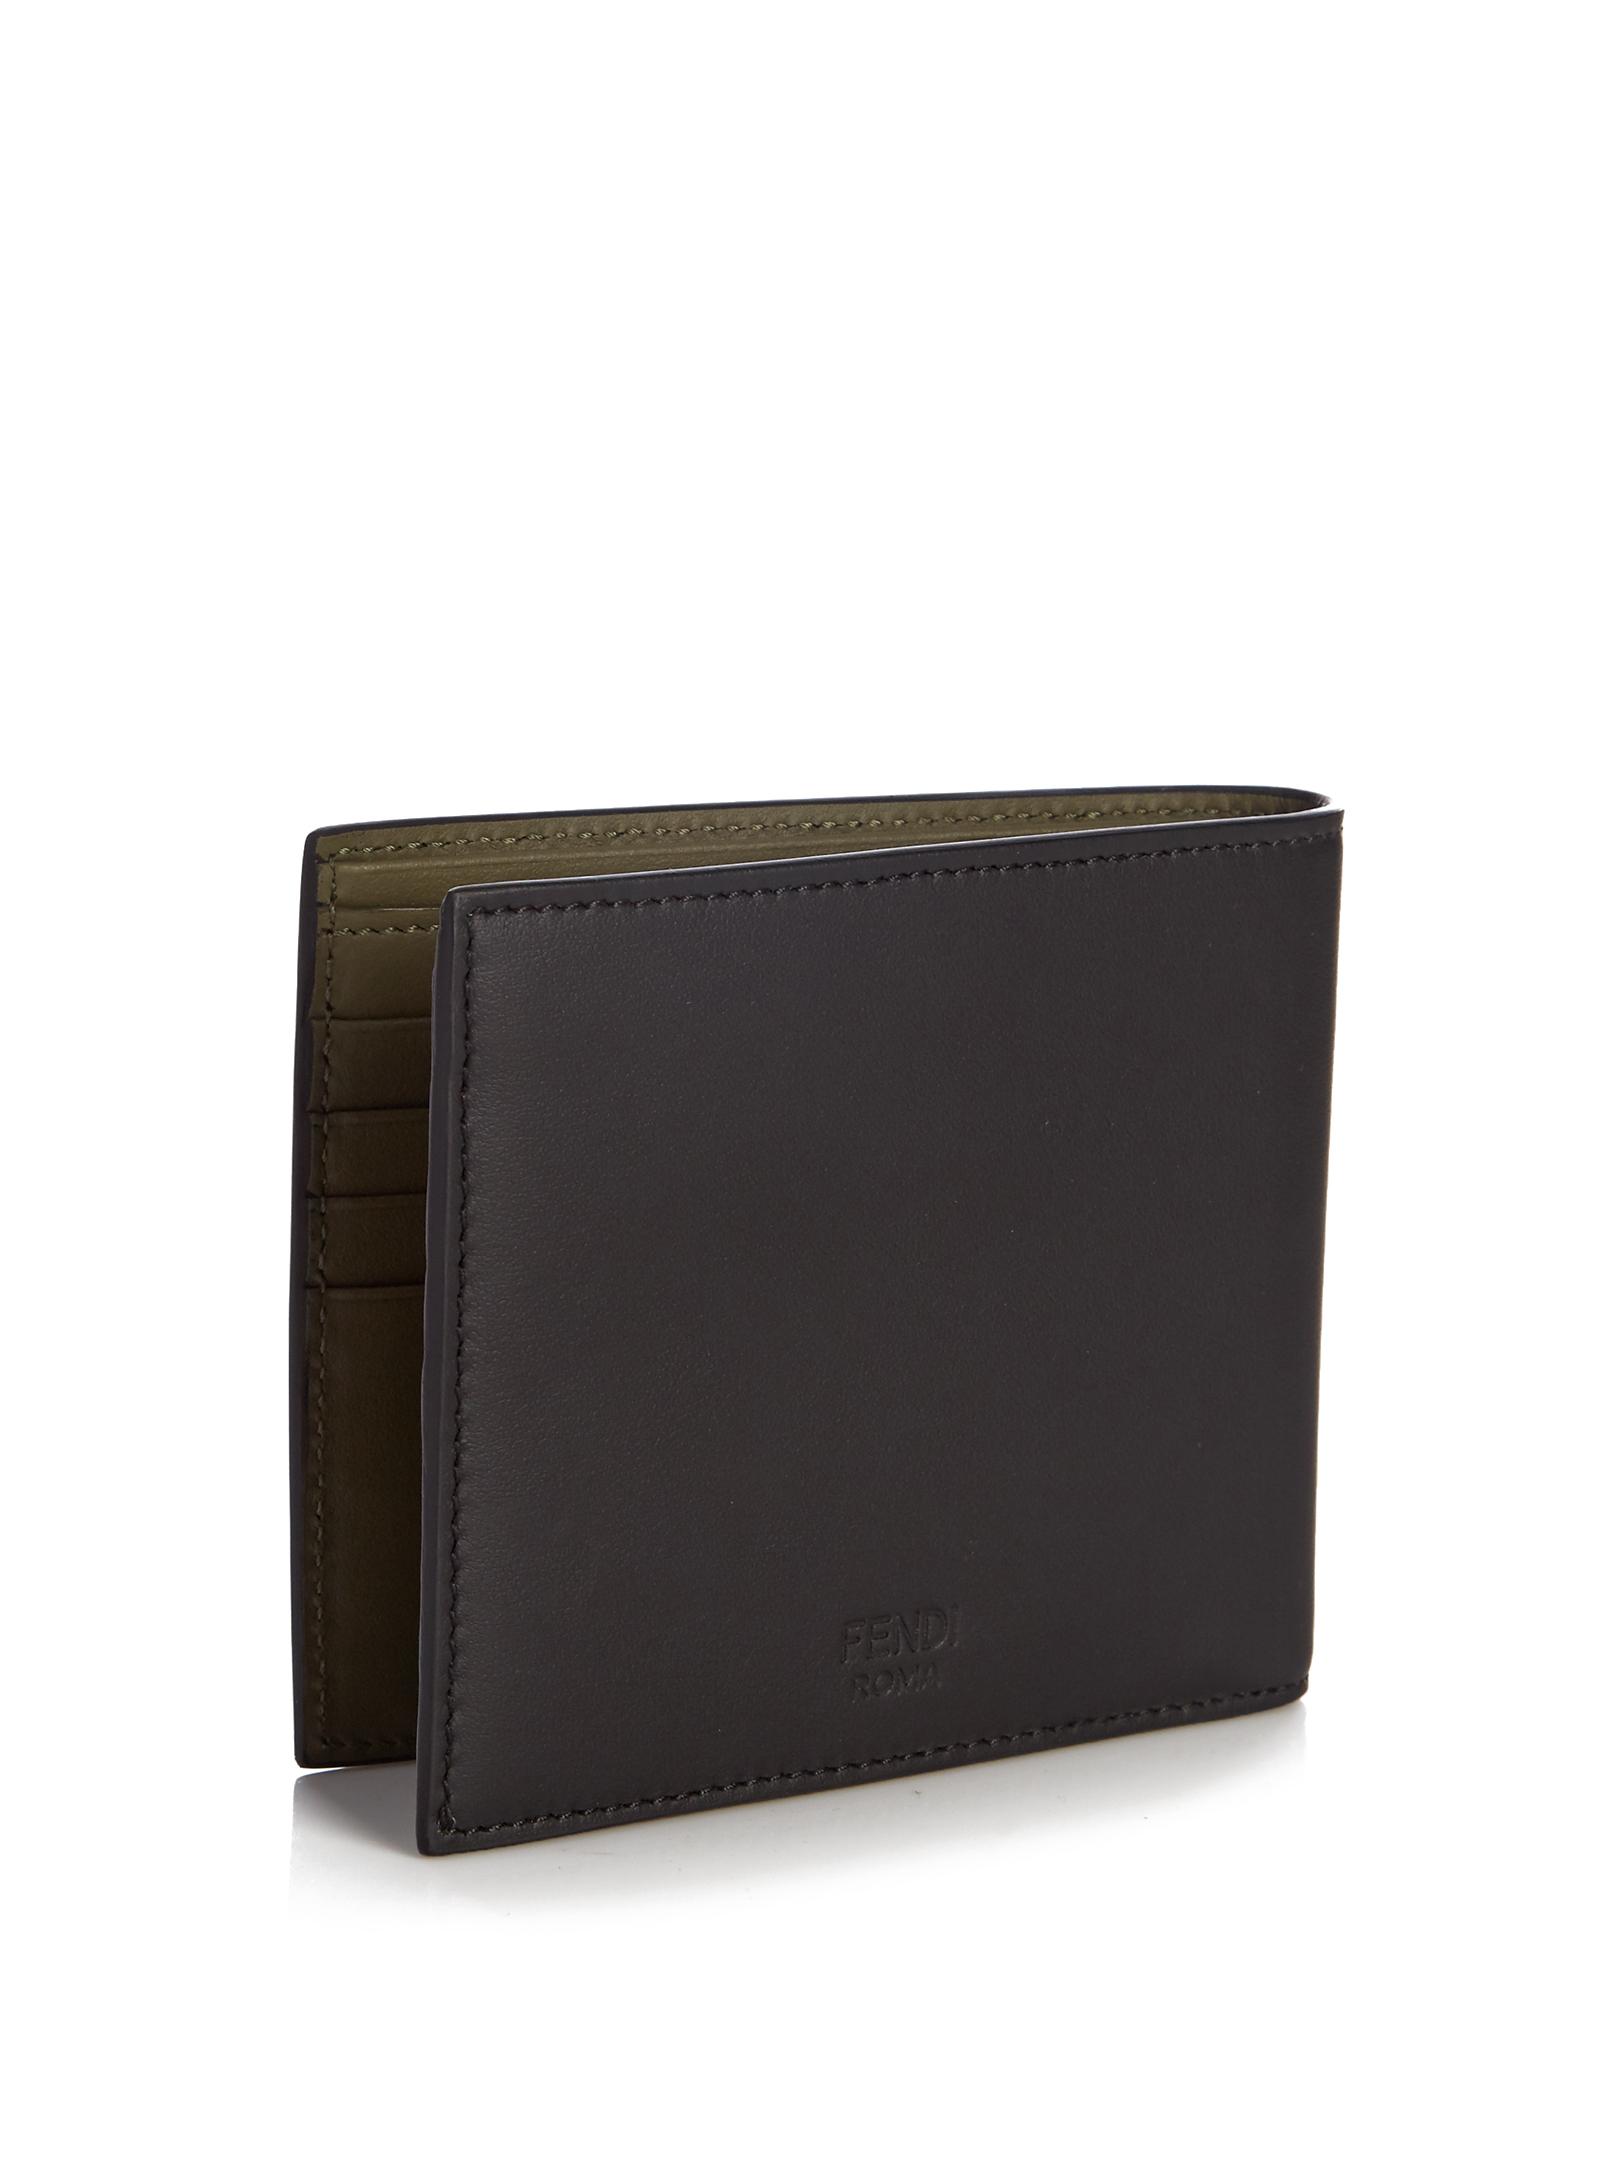 Fendi No Words Bi-fold Leather Wallet in Black for Men | Lyst